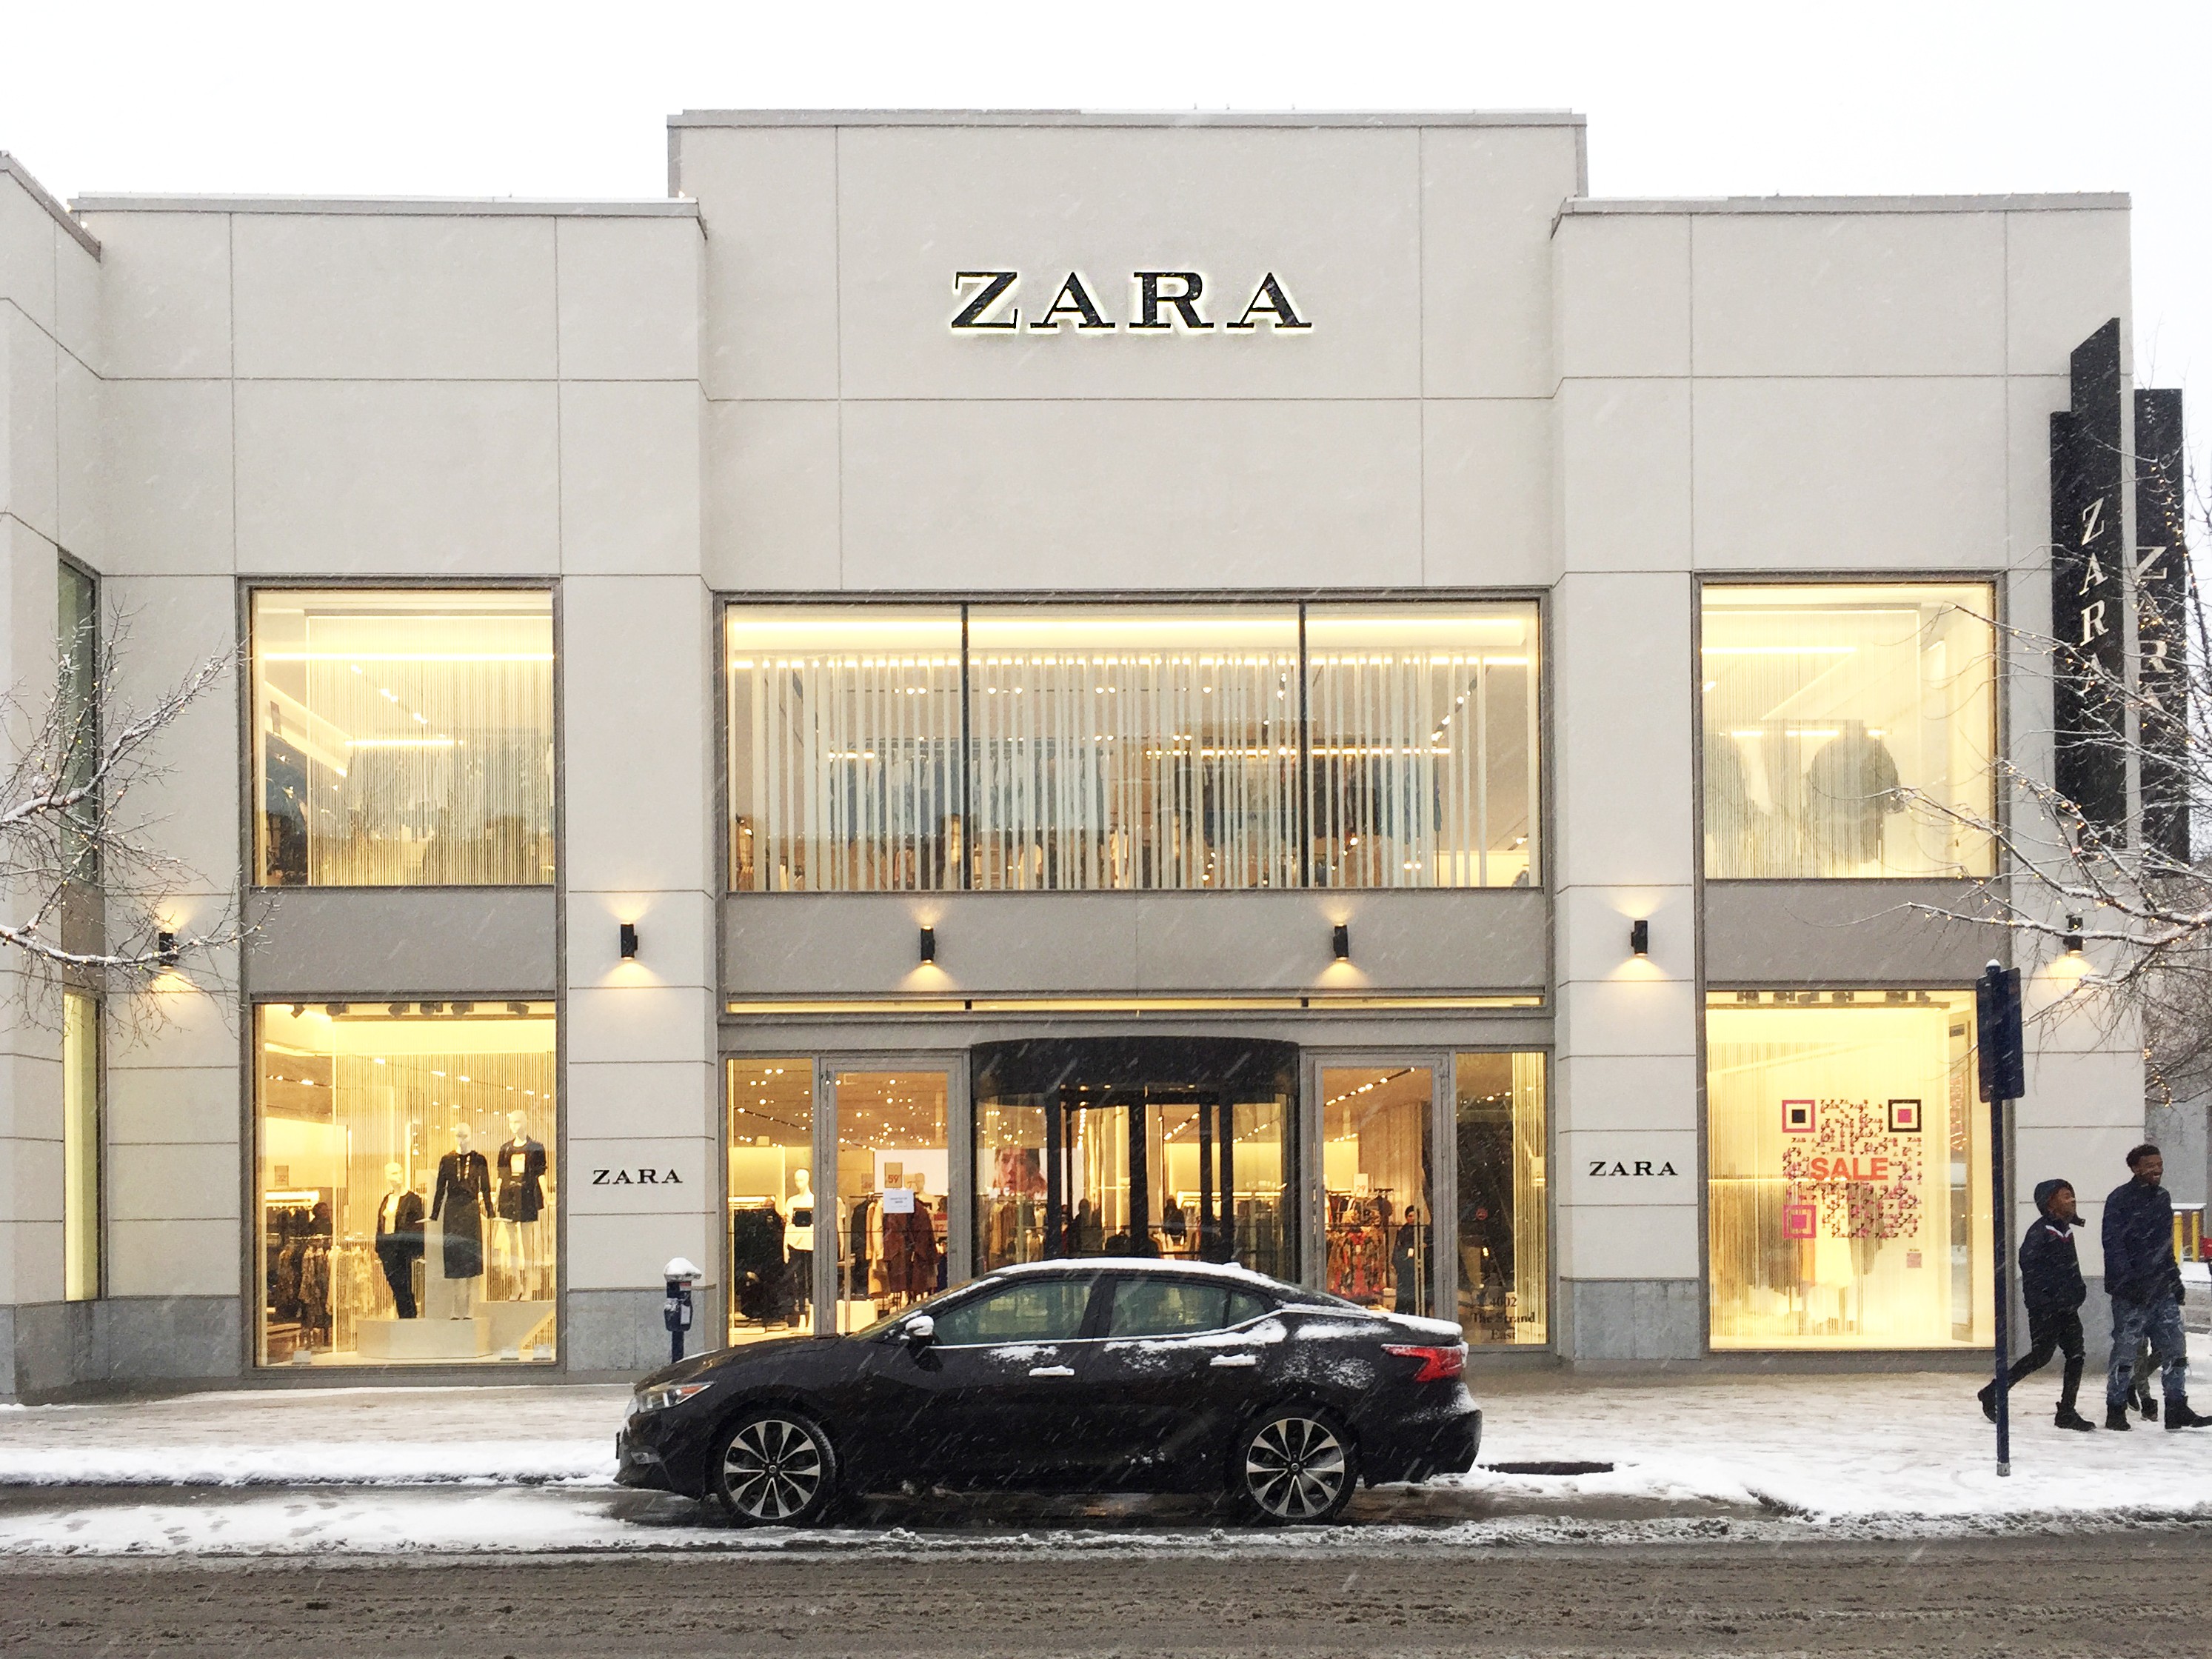 
Tính tới năm 2016, Zara đã vượt qua thị trường bán lẻ ảm đạm, nhạt nhẽo với việc tăng trưởng doanh thu lên tới 15,9 tỷ USD.
